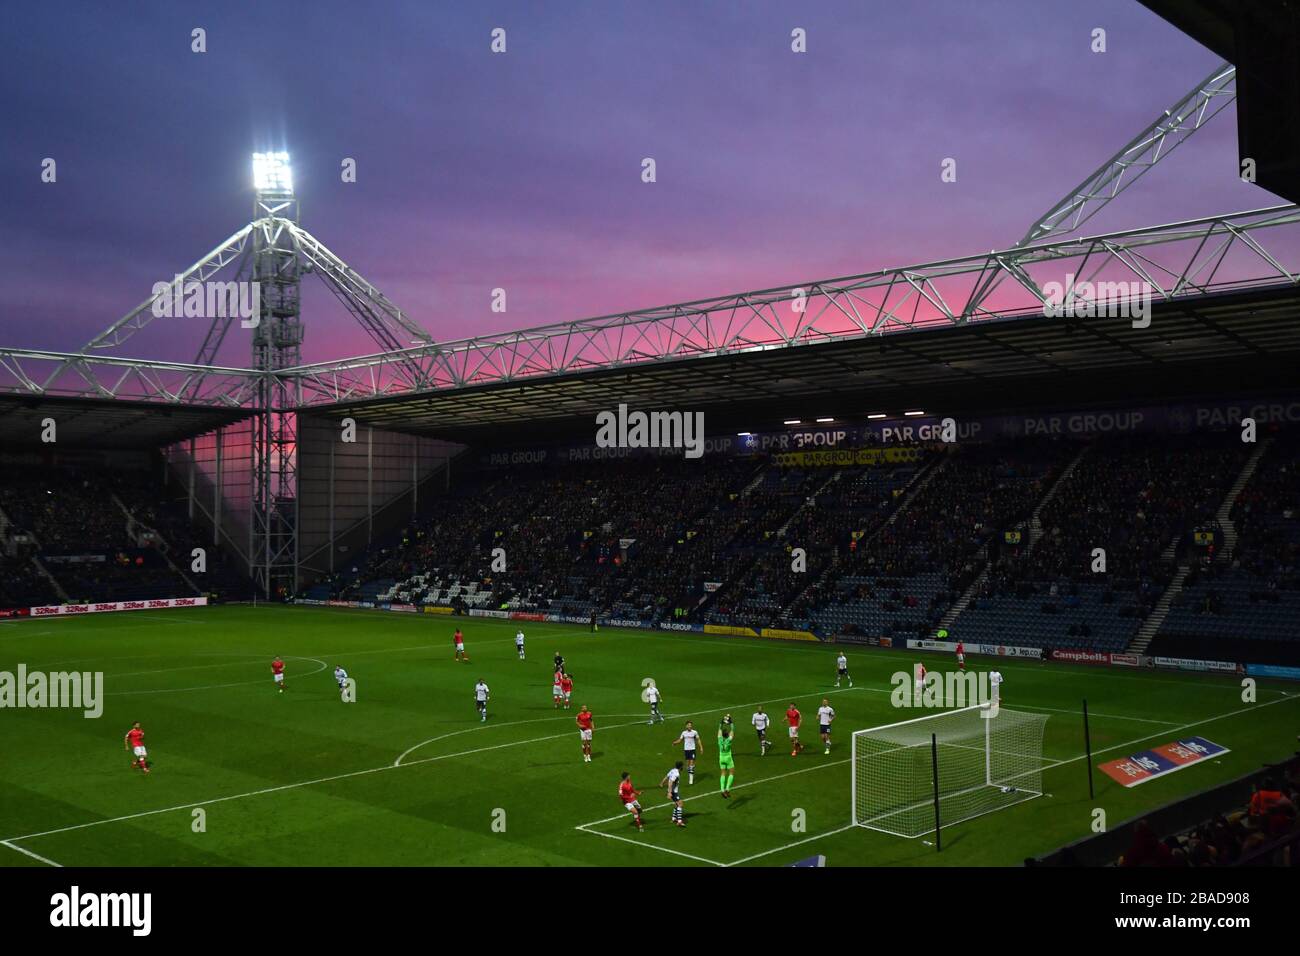 Allgemeiner Blick auf die Spielaktion, während die Sonne hinter dem Deepdale Stadion untergeht Stockfoto